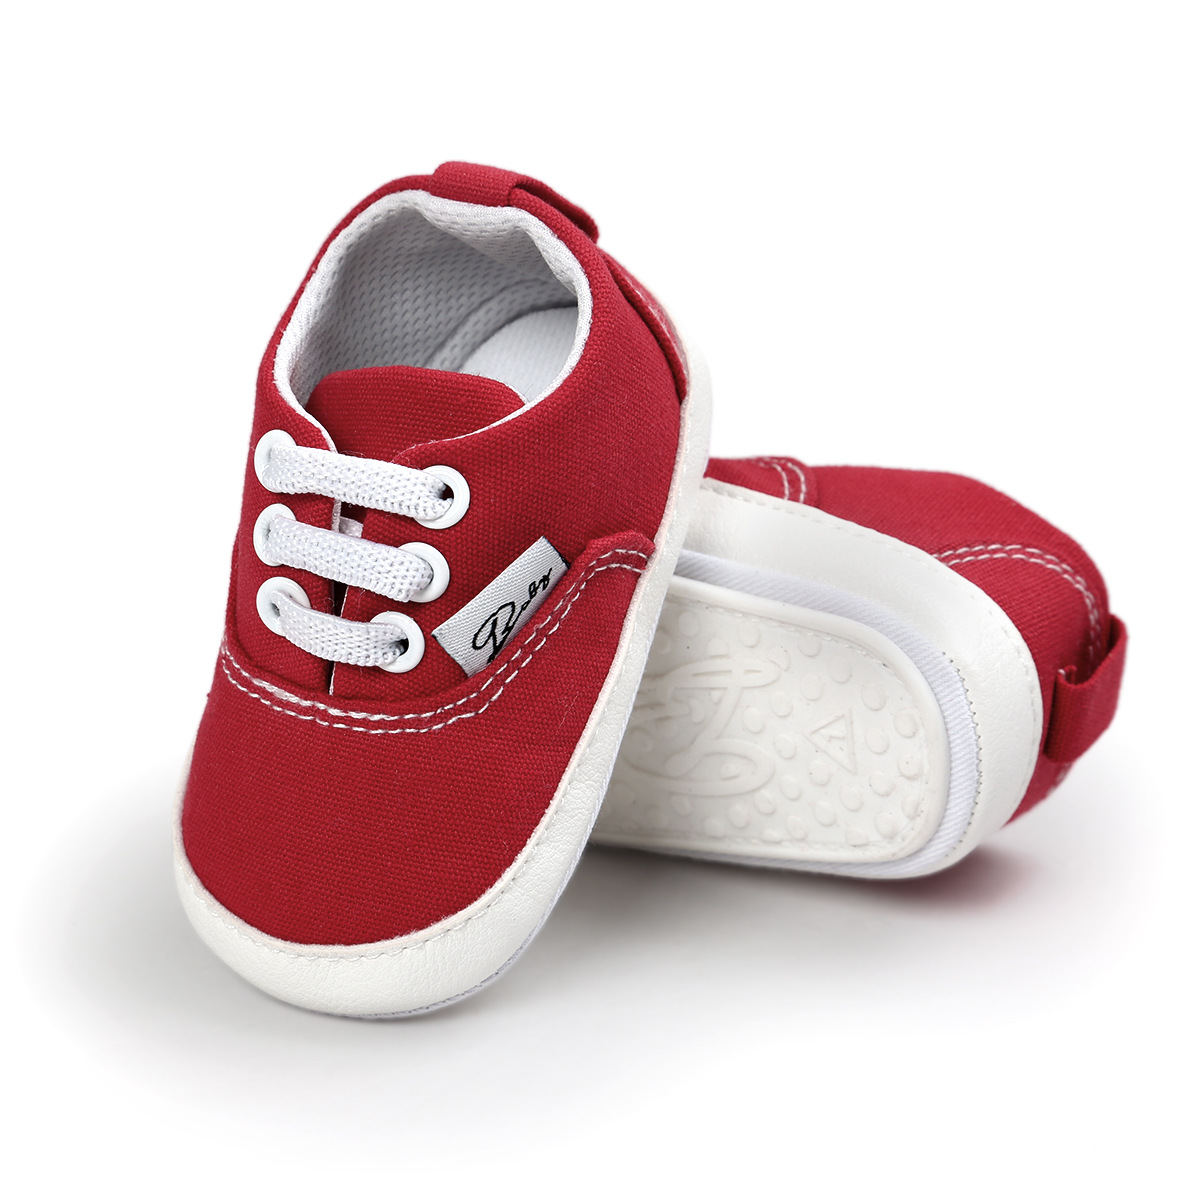 Chaussures bébé en coton - Ref 3436710 Image 55